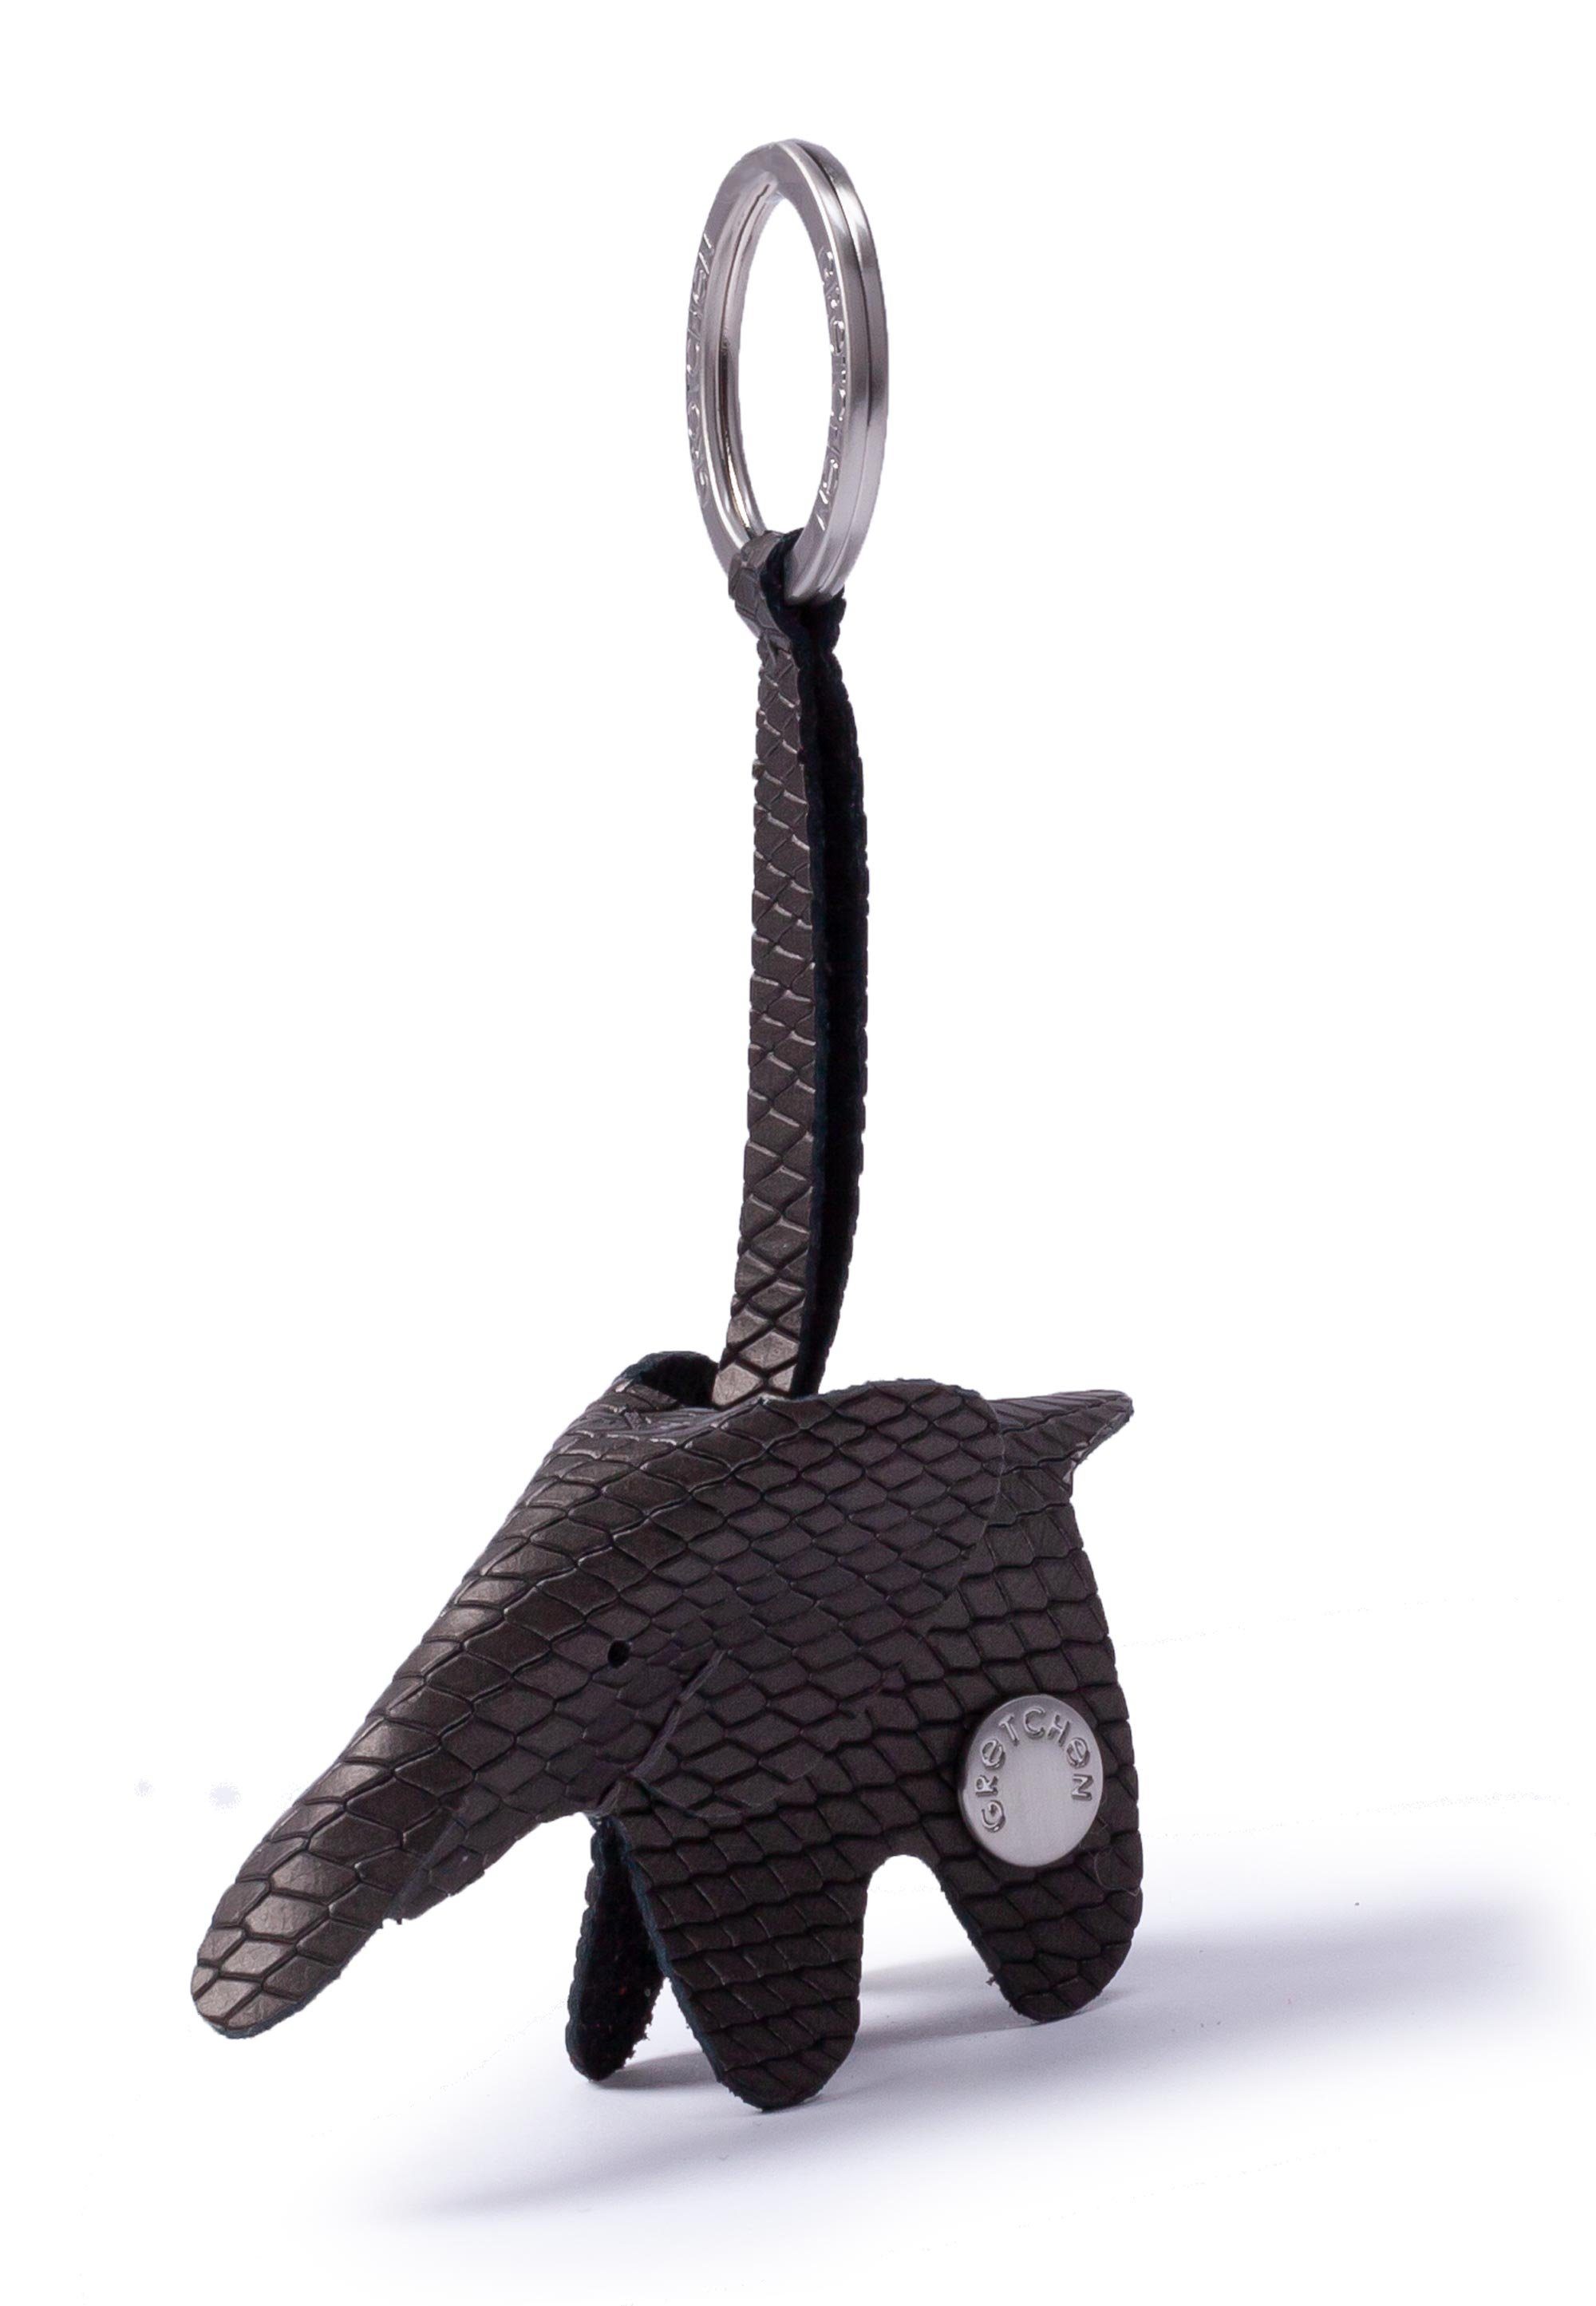 GRETCHEN Schlüsselanhänger Elephant, in Form eines Elefanten schwarz-silberfarben